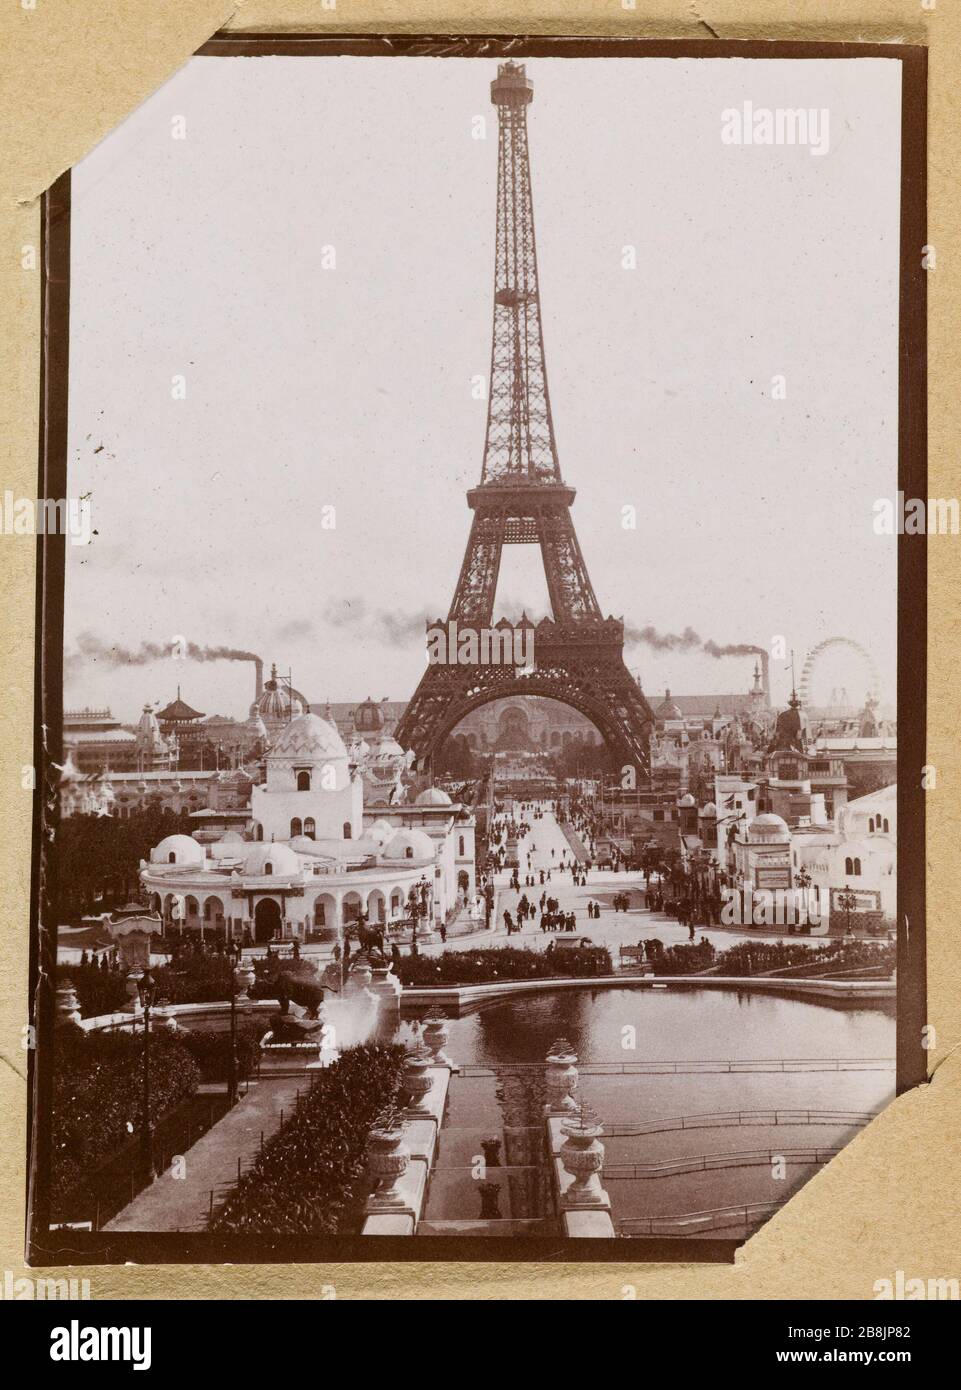 Album Of The 1900 World Expo Eiffel Tower Anonyme Album De L Exposition Universelle De 1900 Tour Eiffel 1900 Musee Des Beaux Arts De La Ville De Paris Petit Palais Stock Photo Alamy